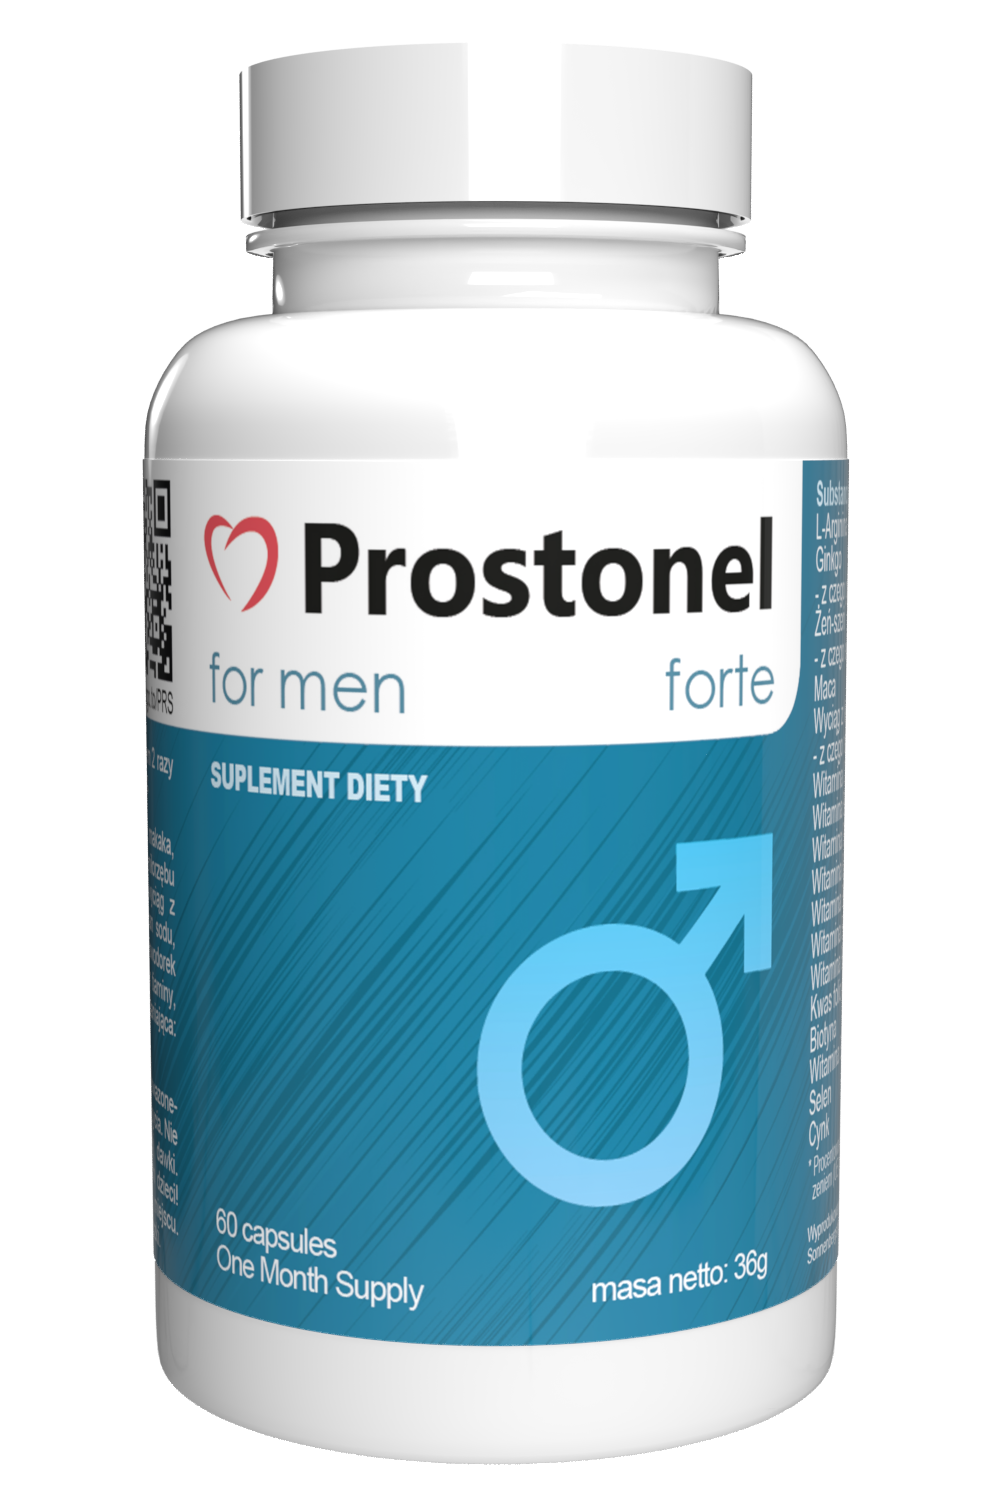 Prostonel